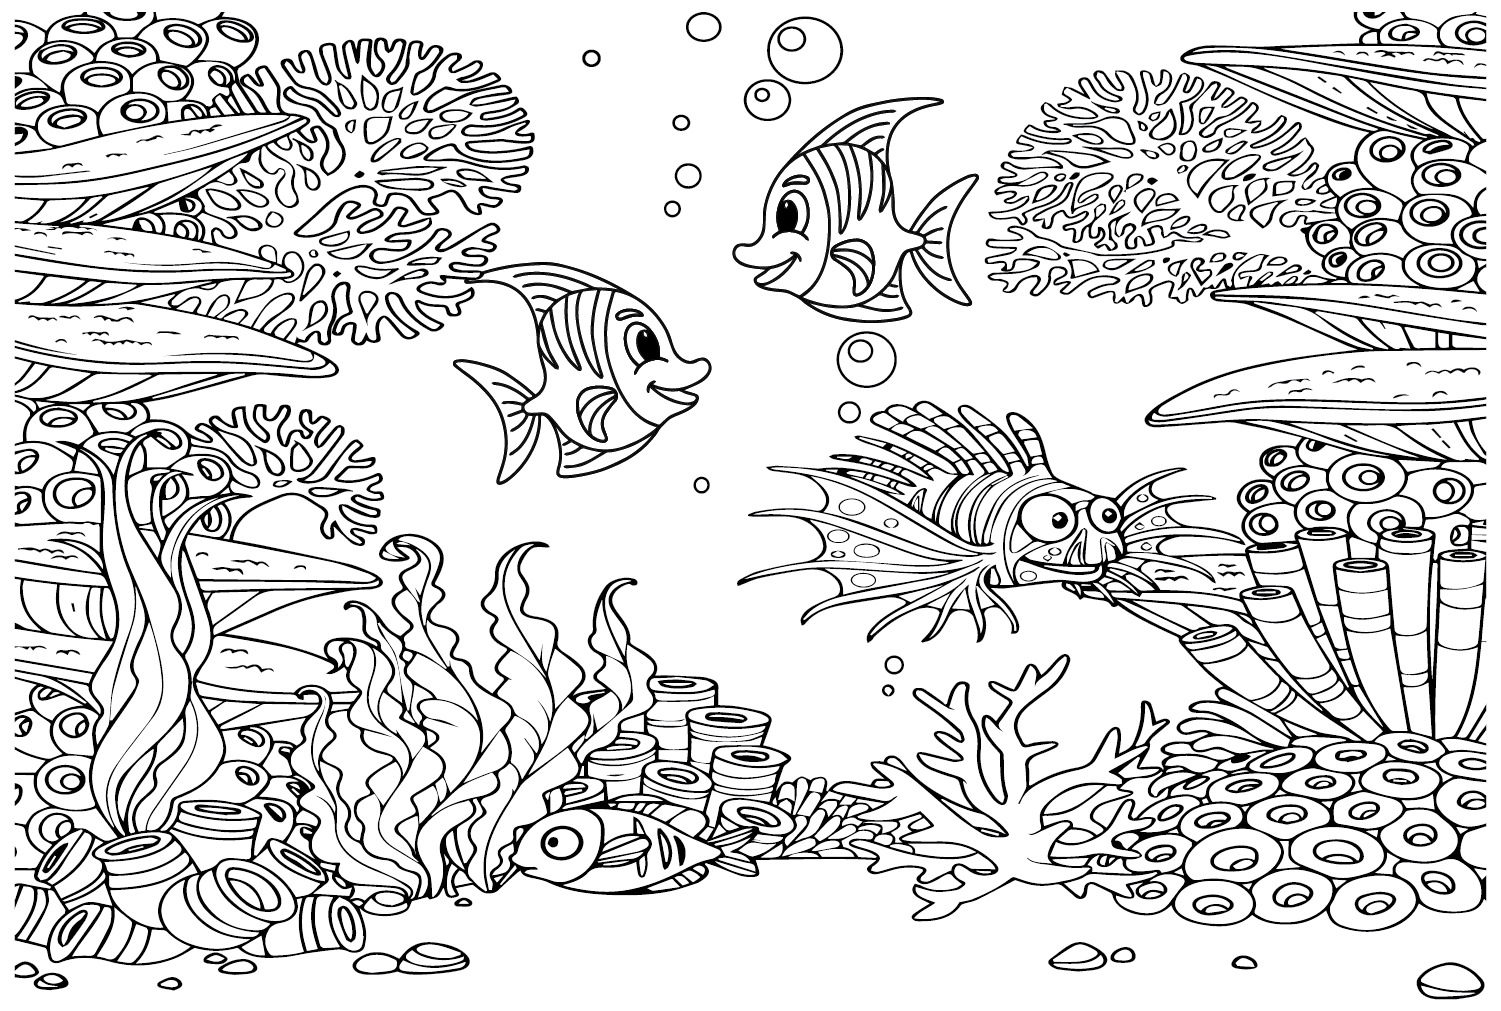 Wimpelkorallenfisch im Wasser von Wimpelkorallenfisch